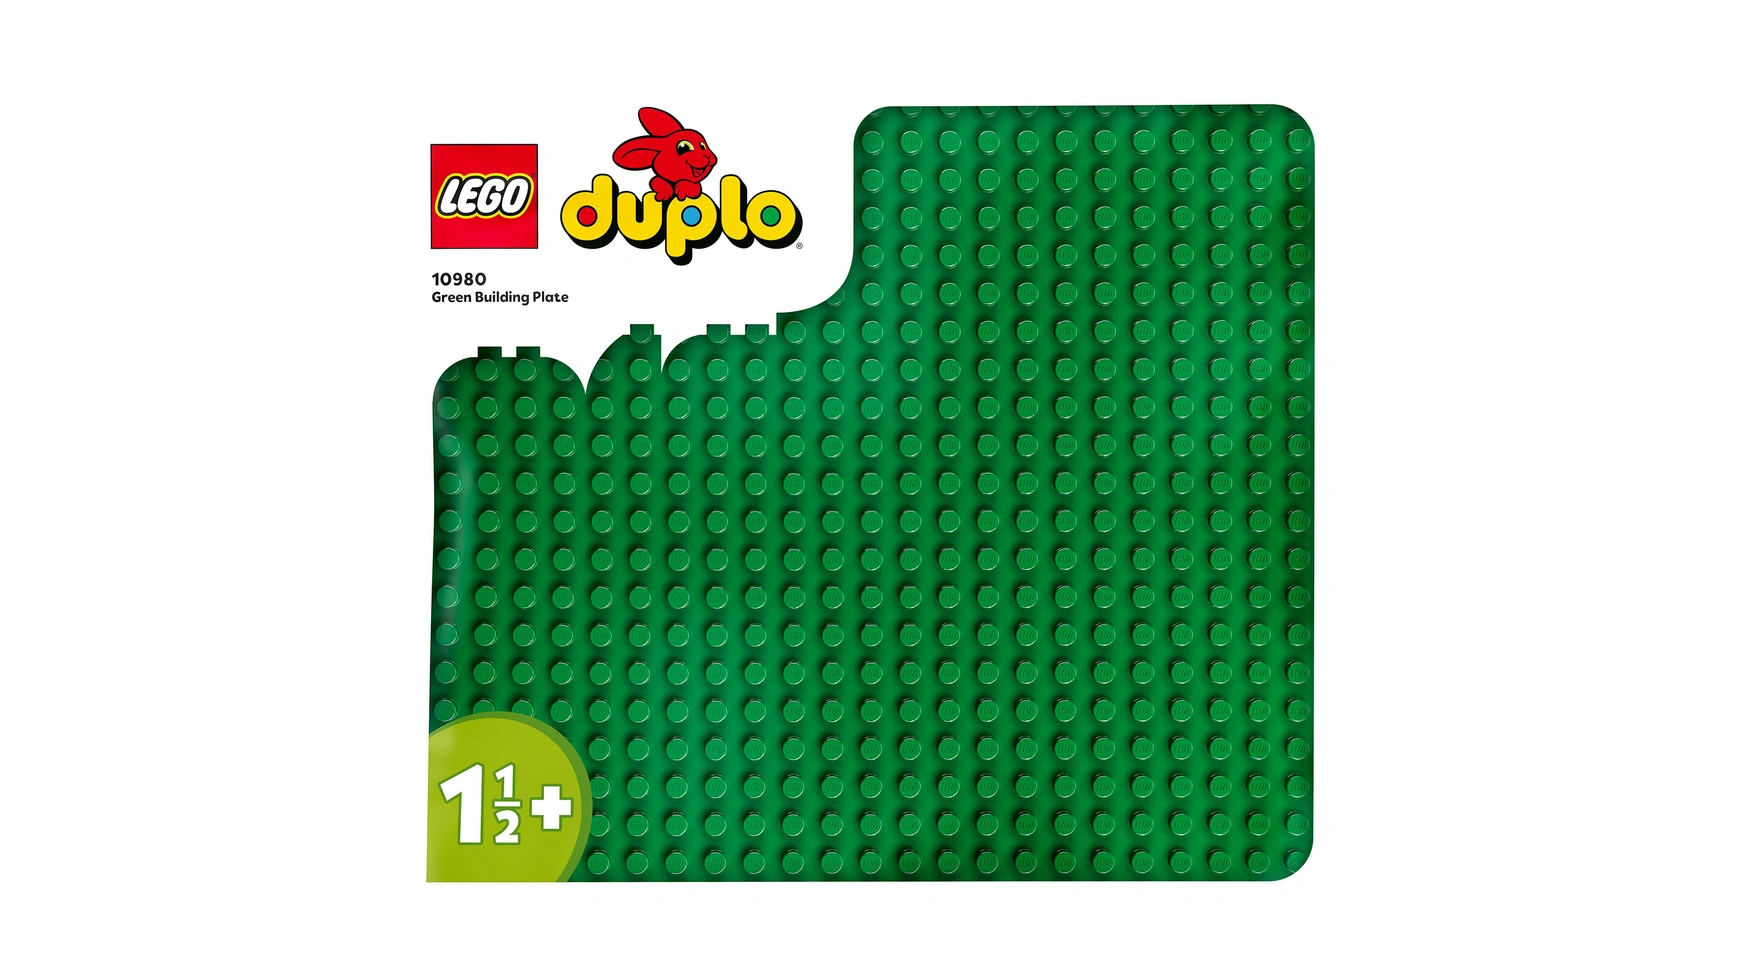 детали lego duplo 10980 зеленая пластина для строительства 1 дет Lego DUPLO Строительная пластина зеленого цвета, опорная плита для наборов DUPLO